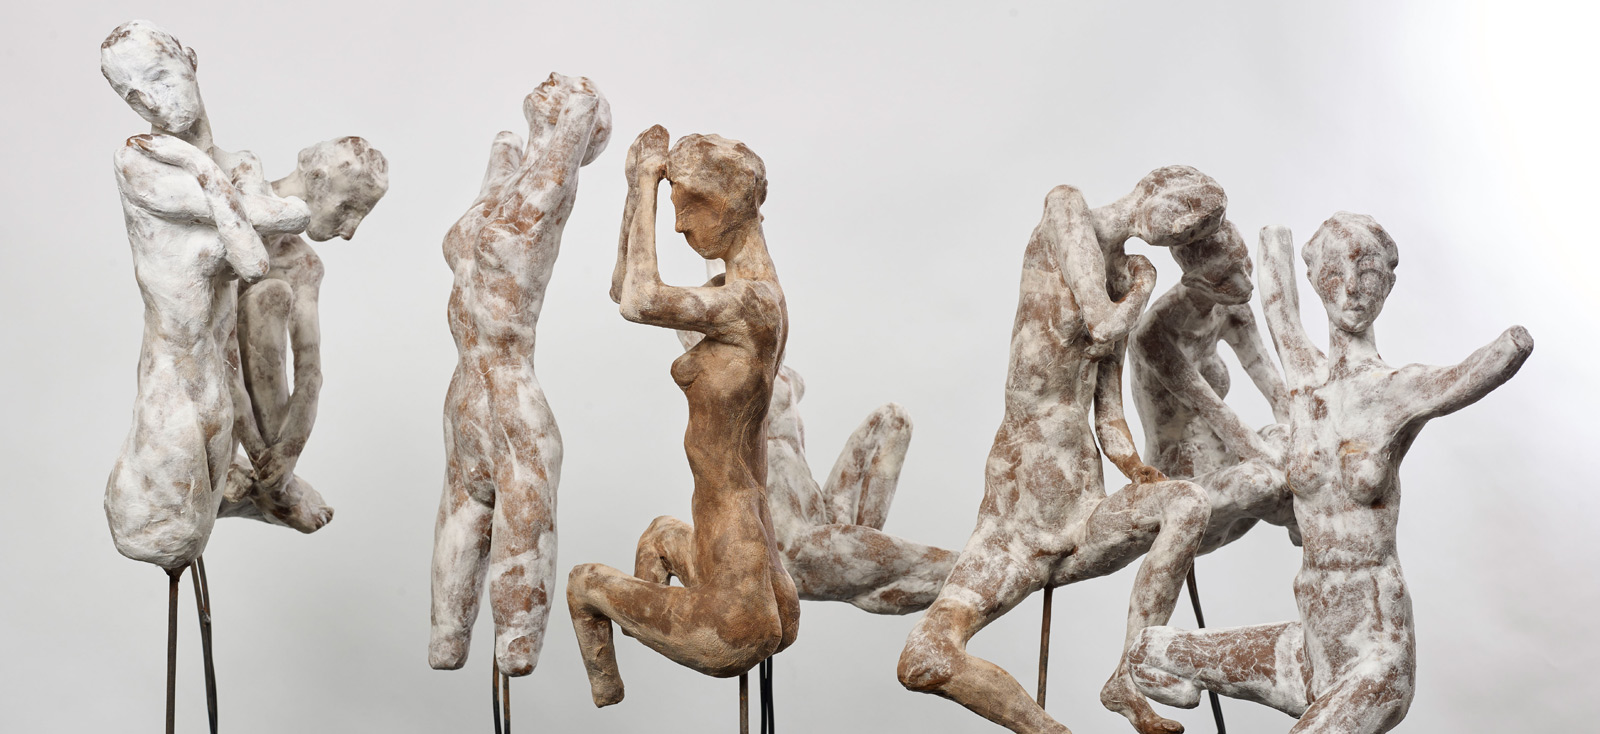 Kalliopi Lemos, 'Seed and Figures', 2015